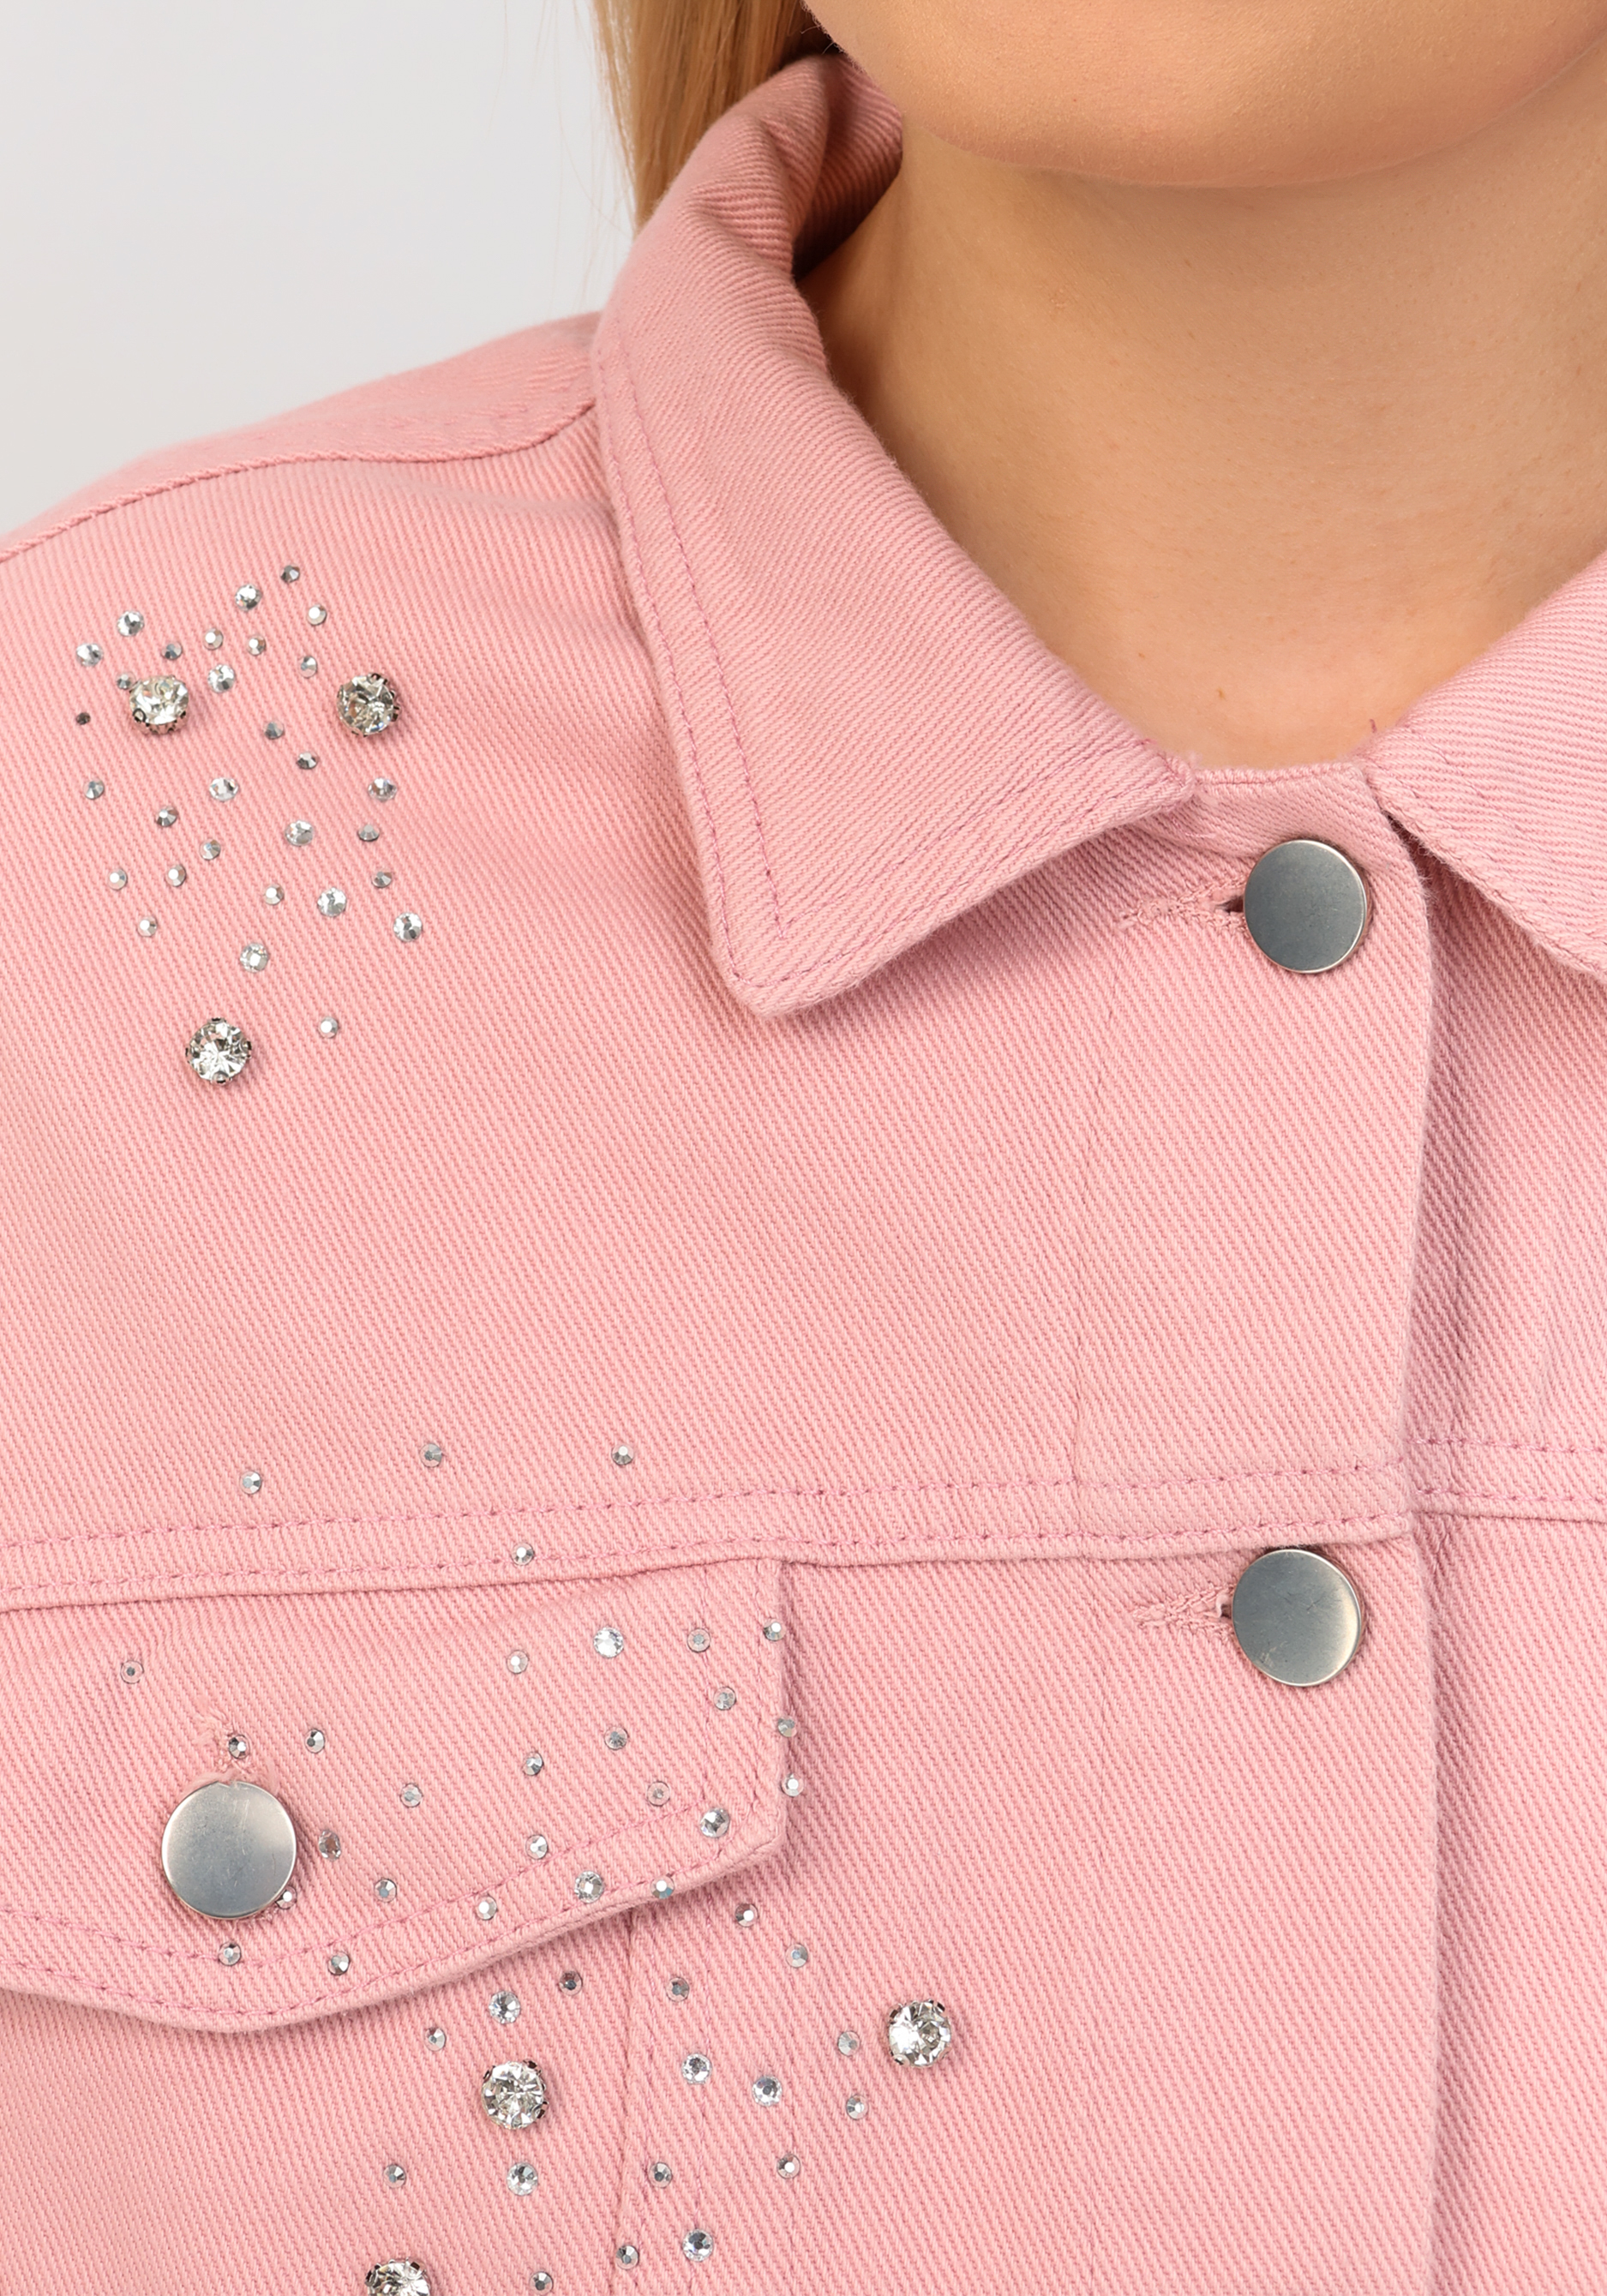 Джинсовая куртка со стразами No name, размер 52-54, цвет розовый - фото 10